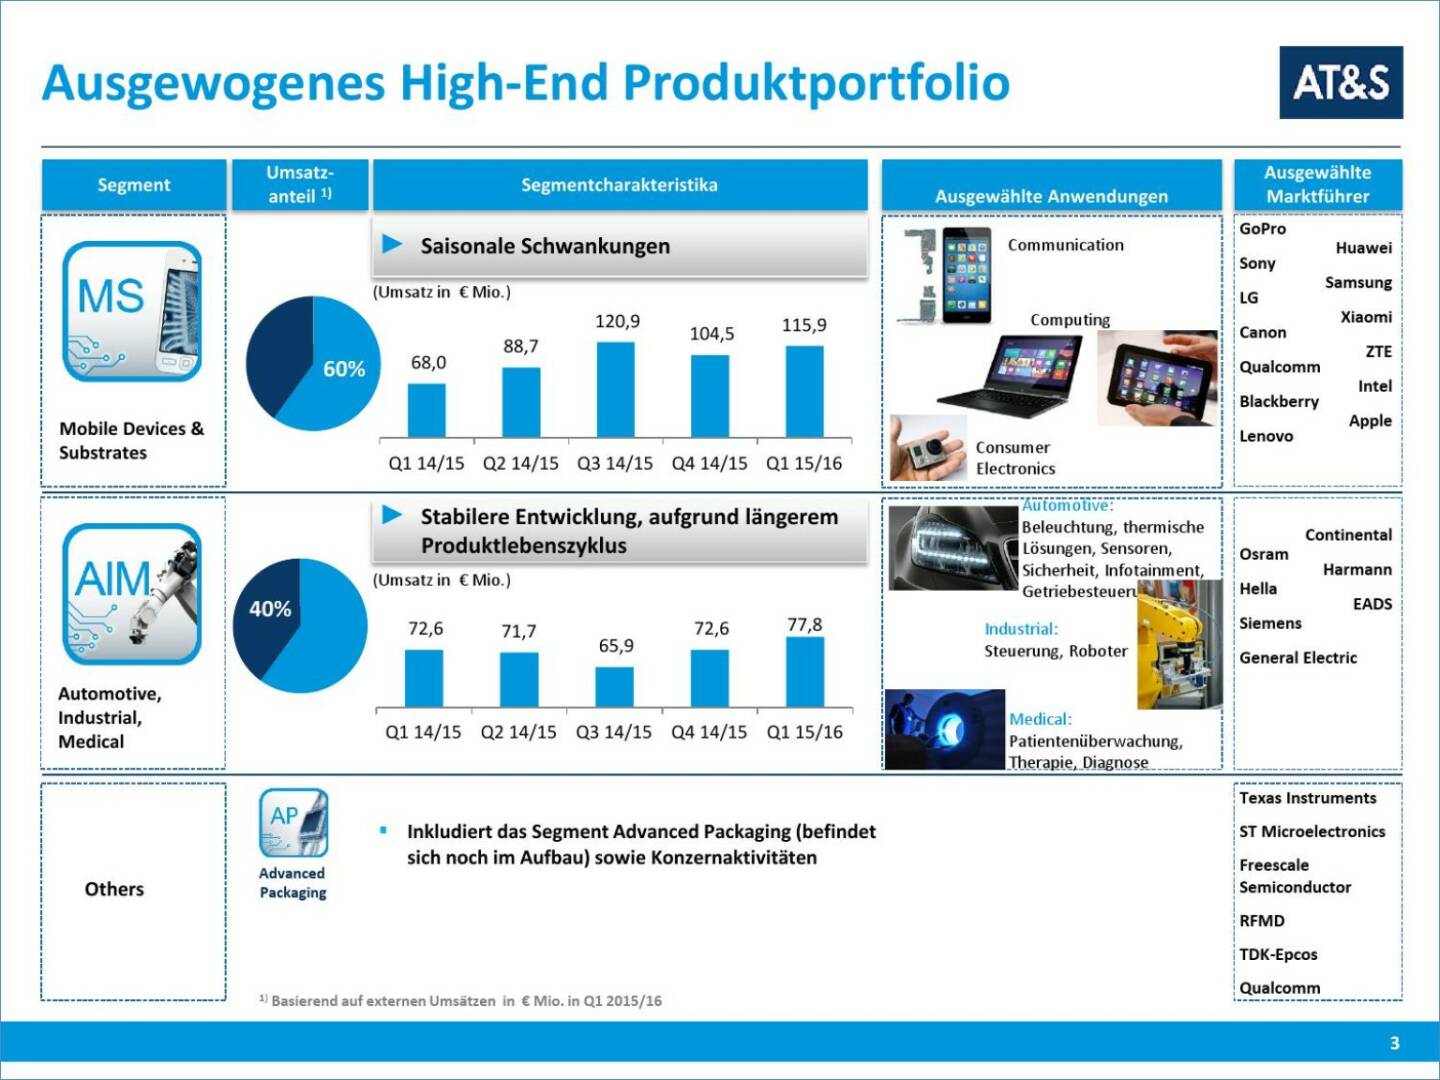 AT&S Ausgewogenes High-End Produktportfolio